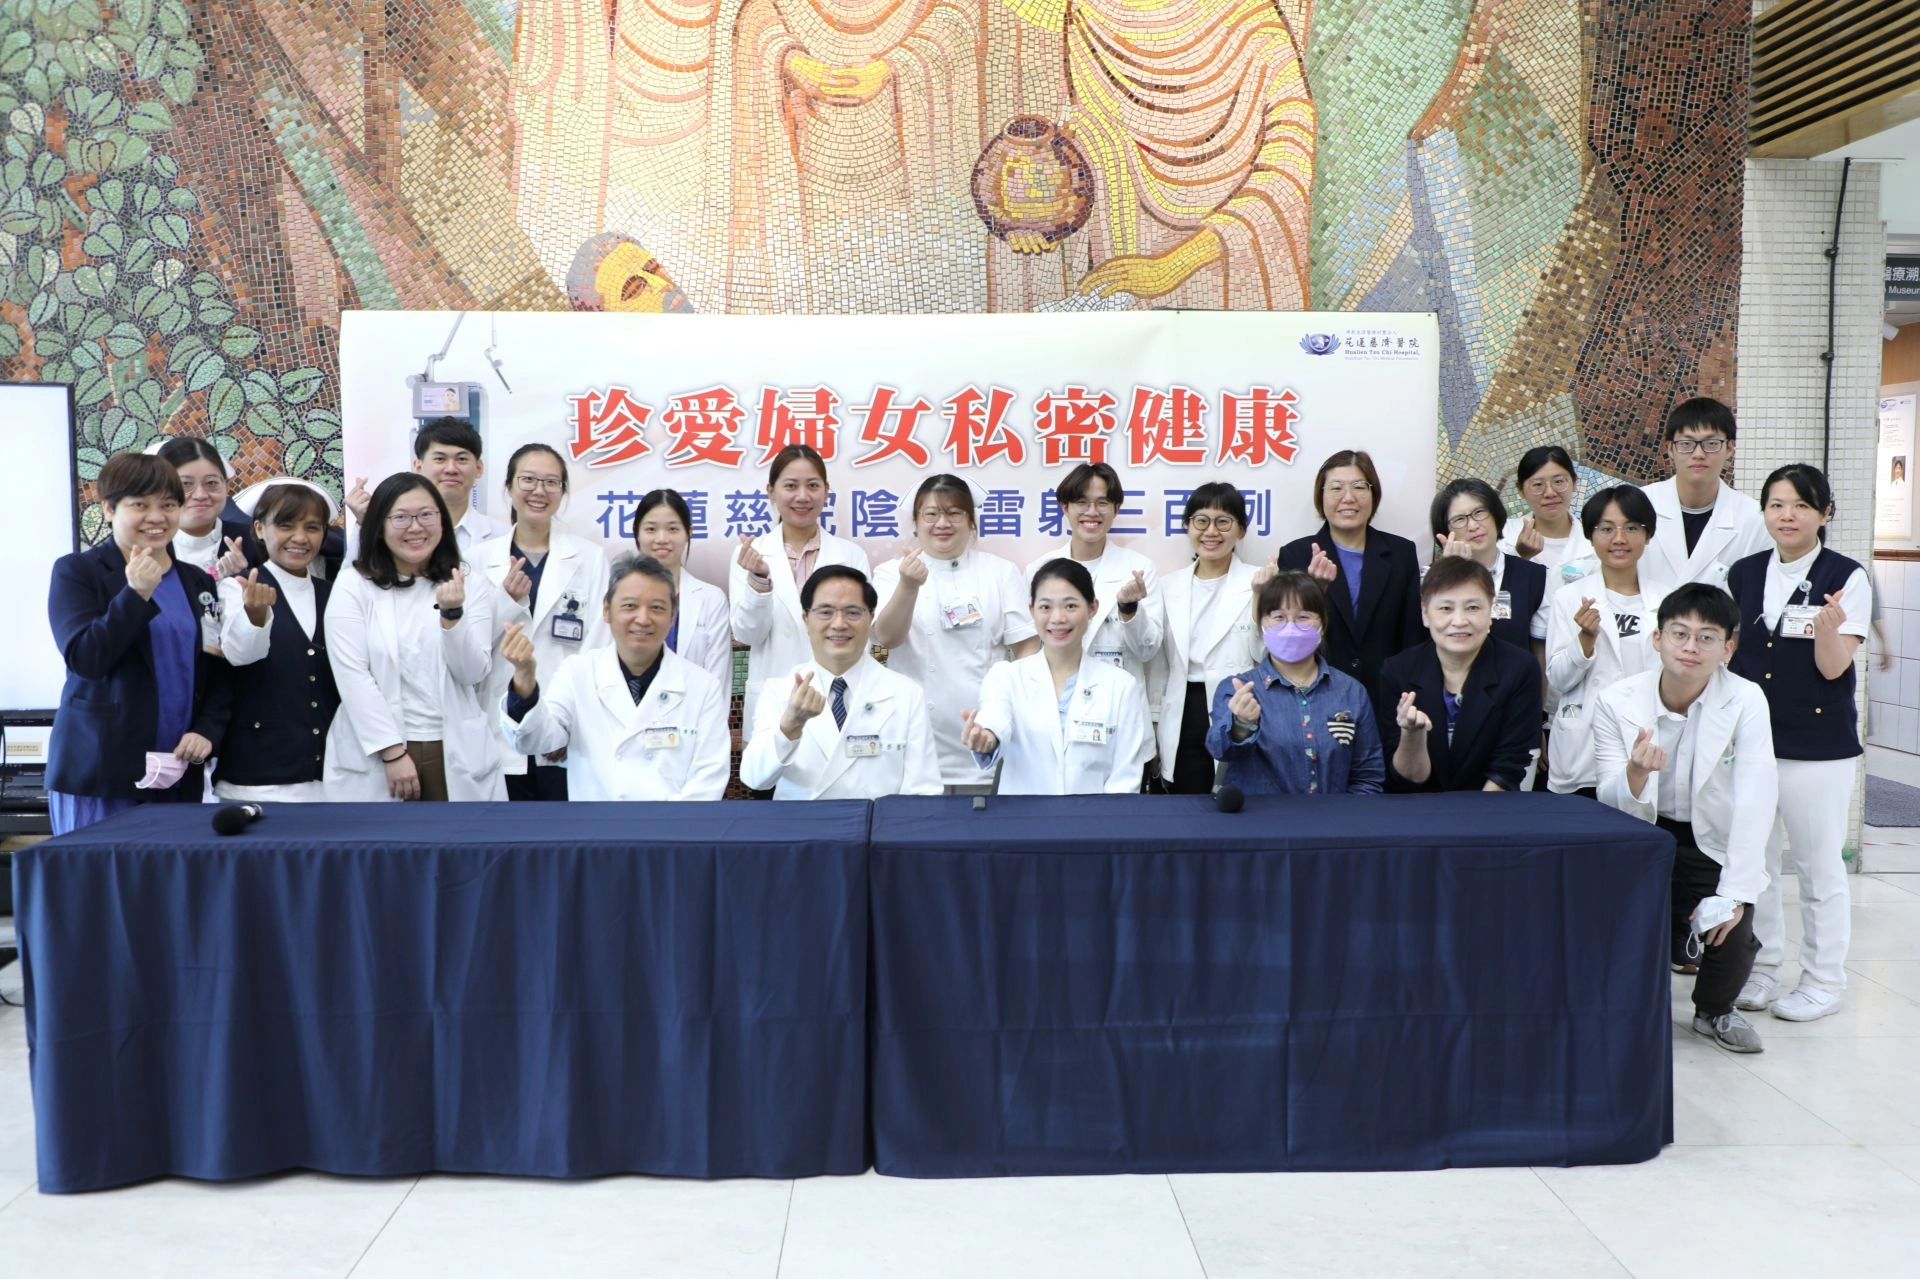 花蓮慈院婦產部累積陰道雷射手術超過300人次，造福許多婦女，並於三月二十六日上午舉辦記者會。